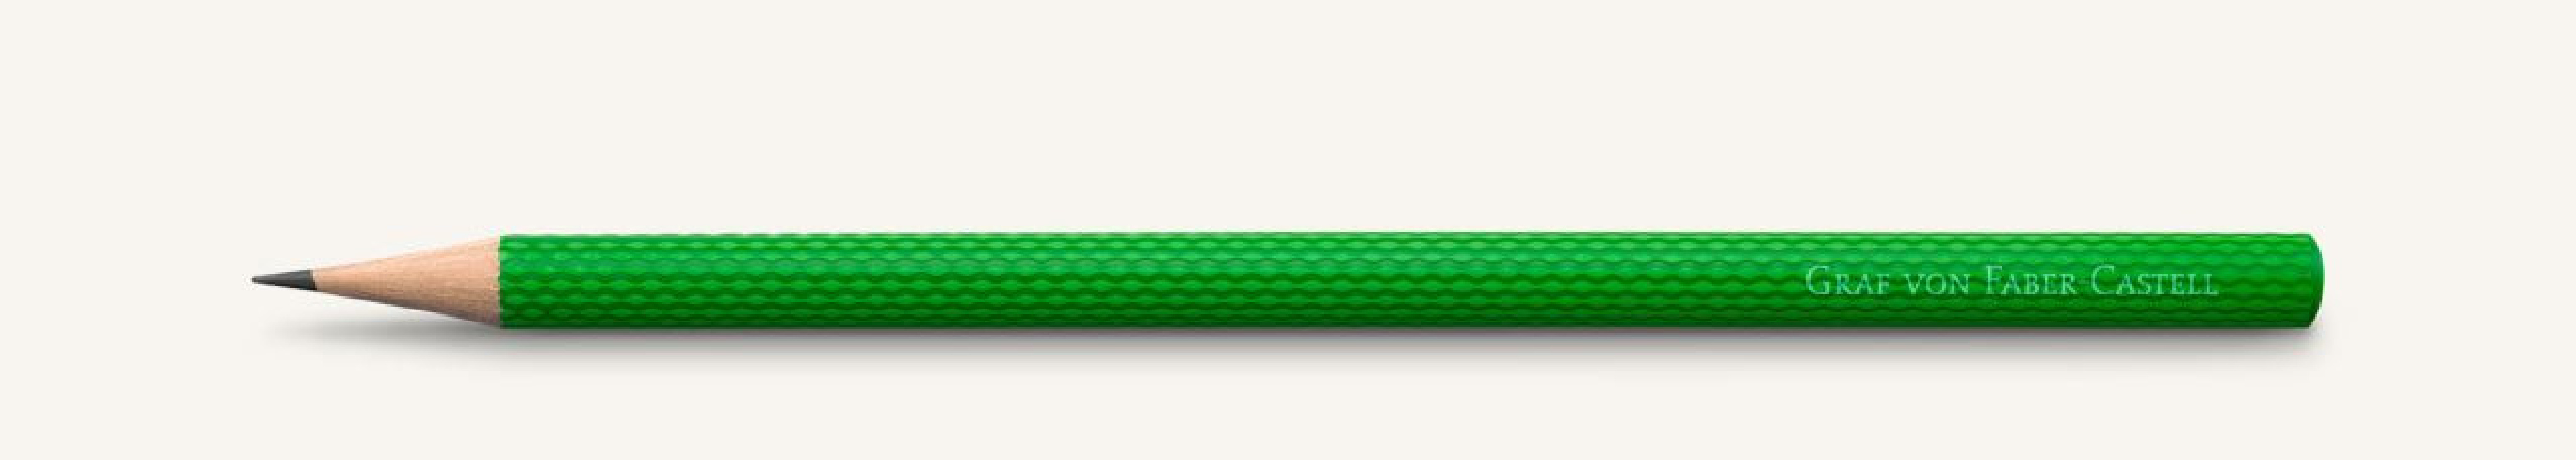 Graf Von Faber Castell 3 graphite pencils Guilloche, Viper Green 118629